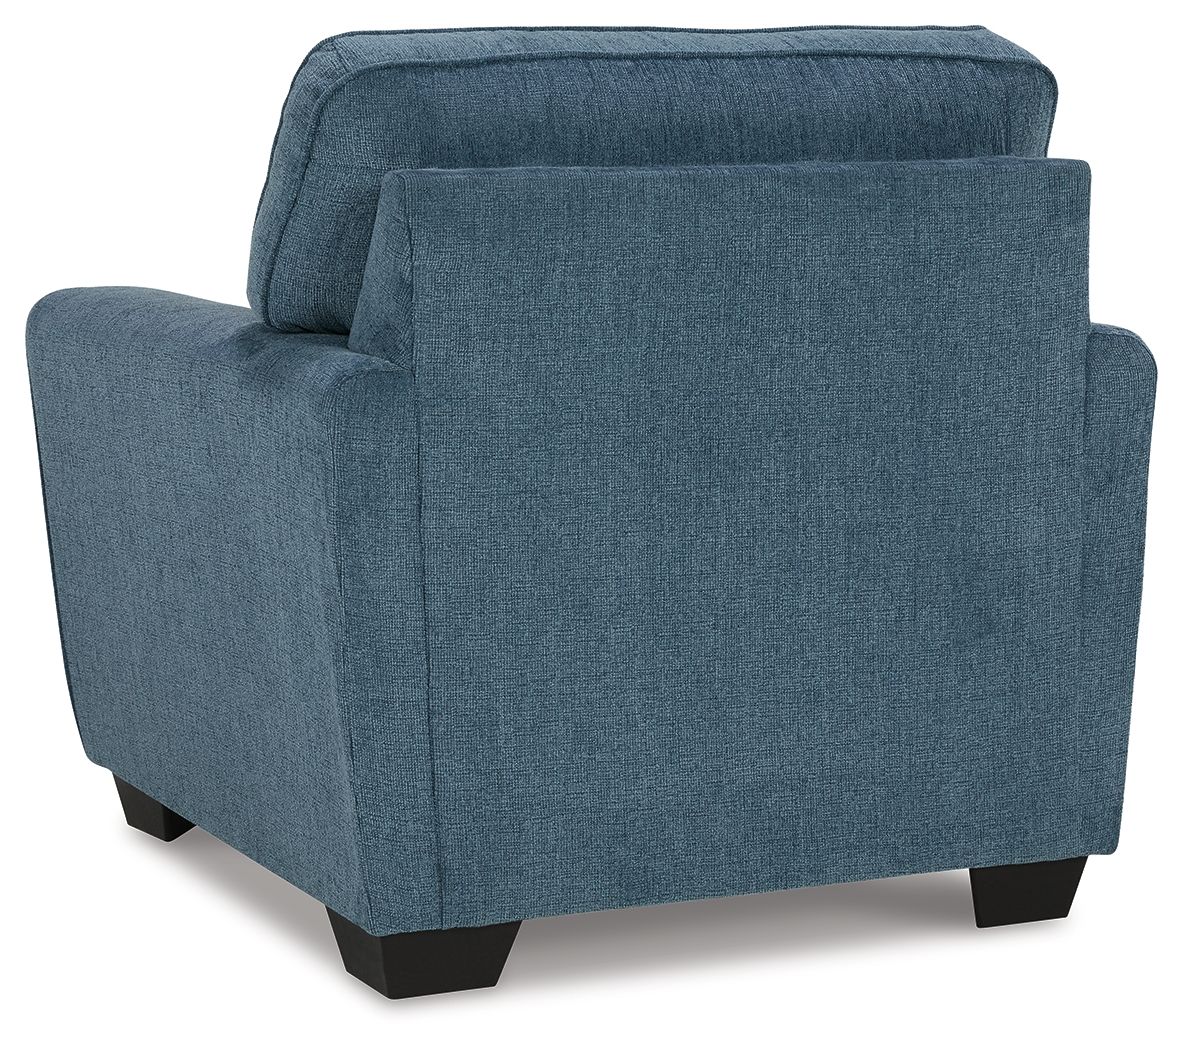 Cashton - Blue - 2 Pc. - Chair, Ottoman